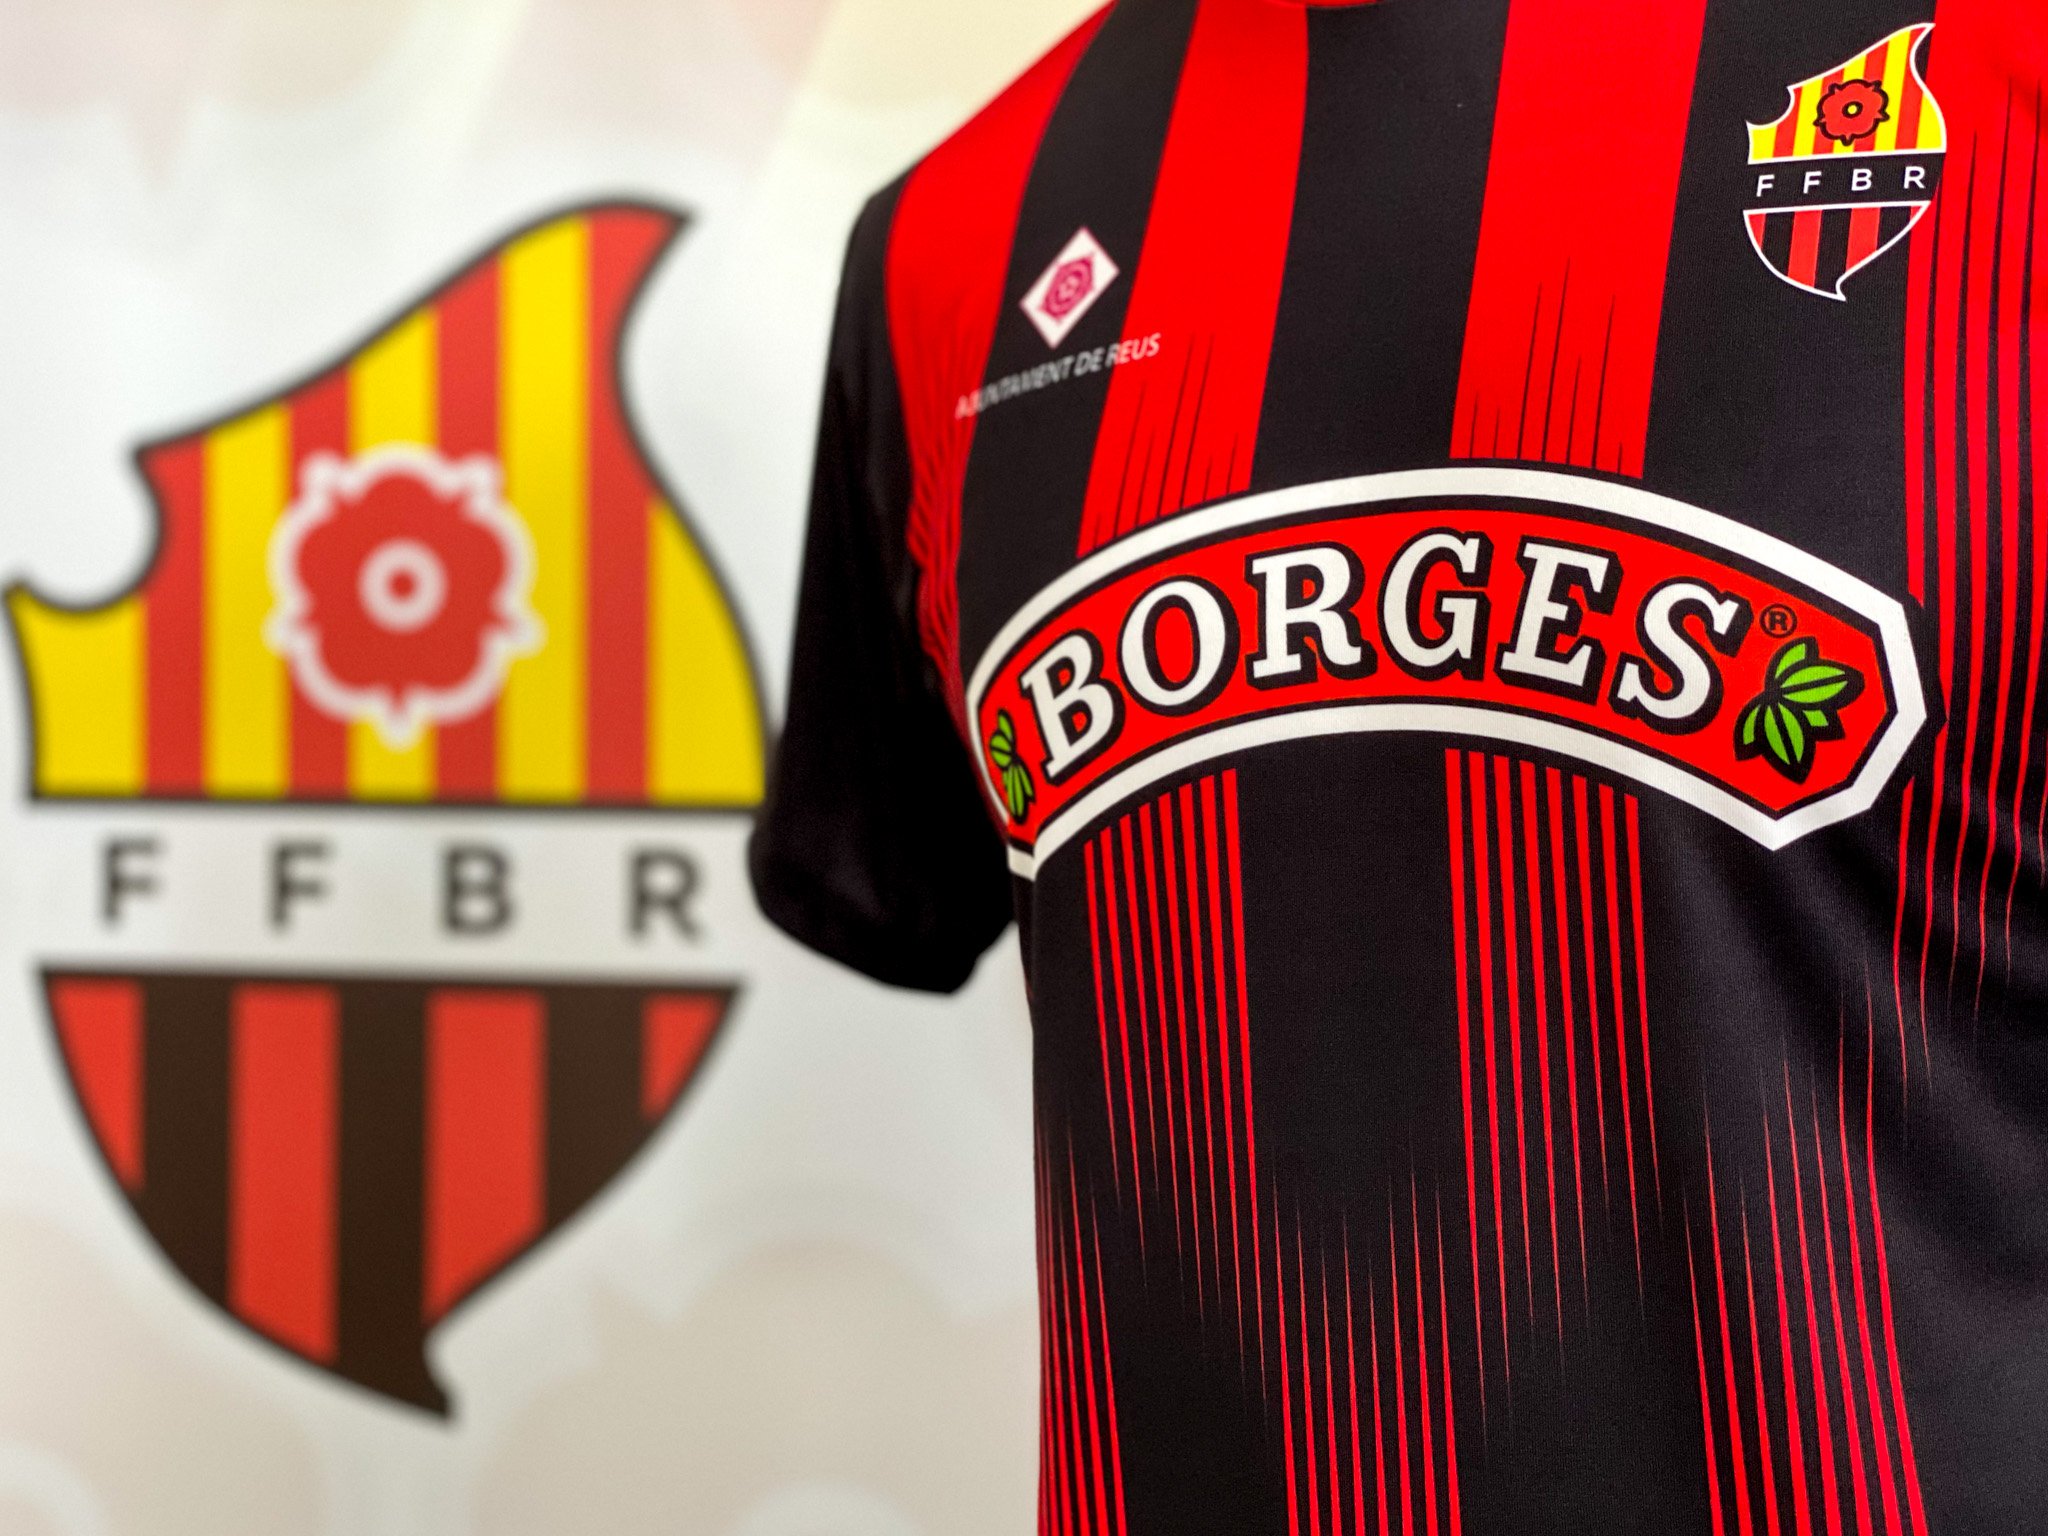 Borges i Fundació Futbol Base Reus renoven la seva aposta pel foment de l’esport a la ciutat